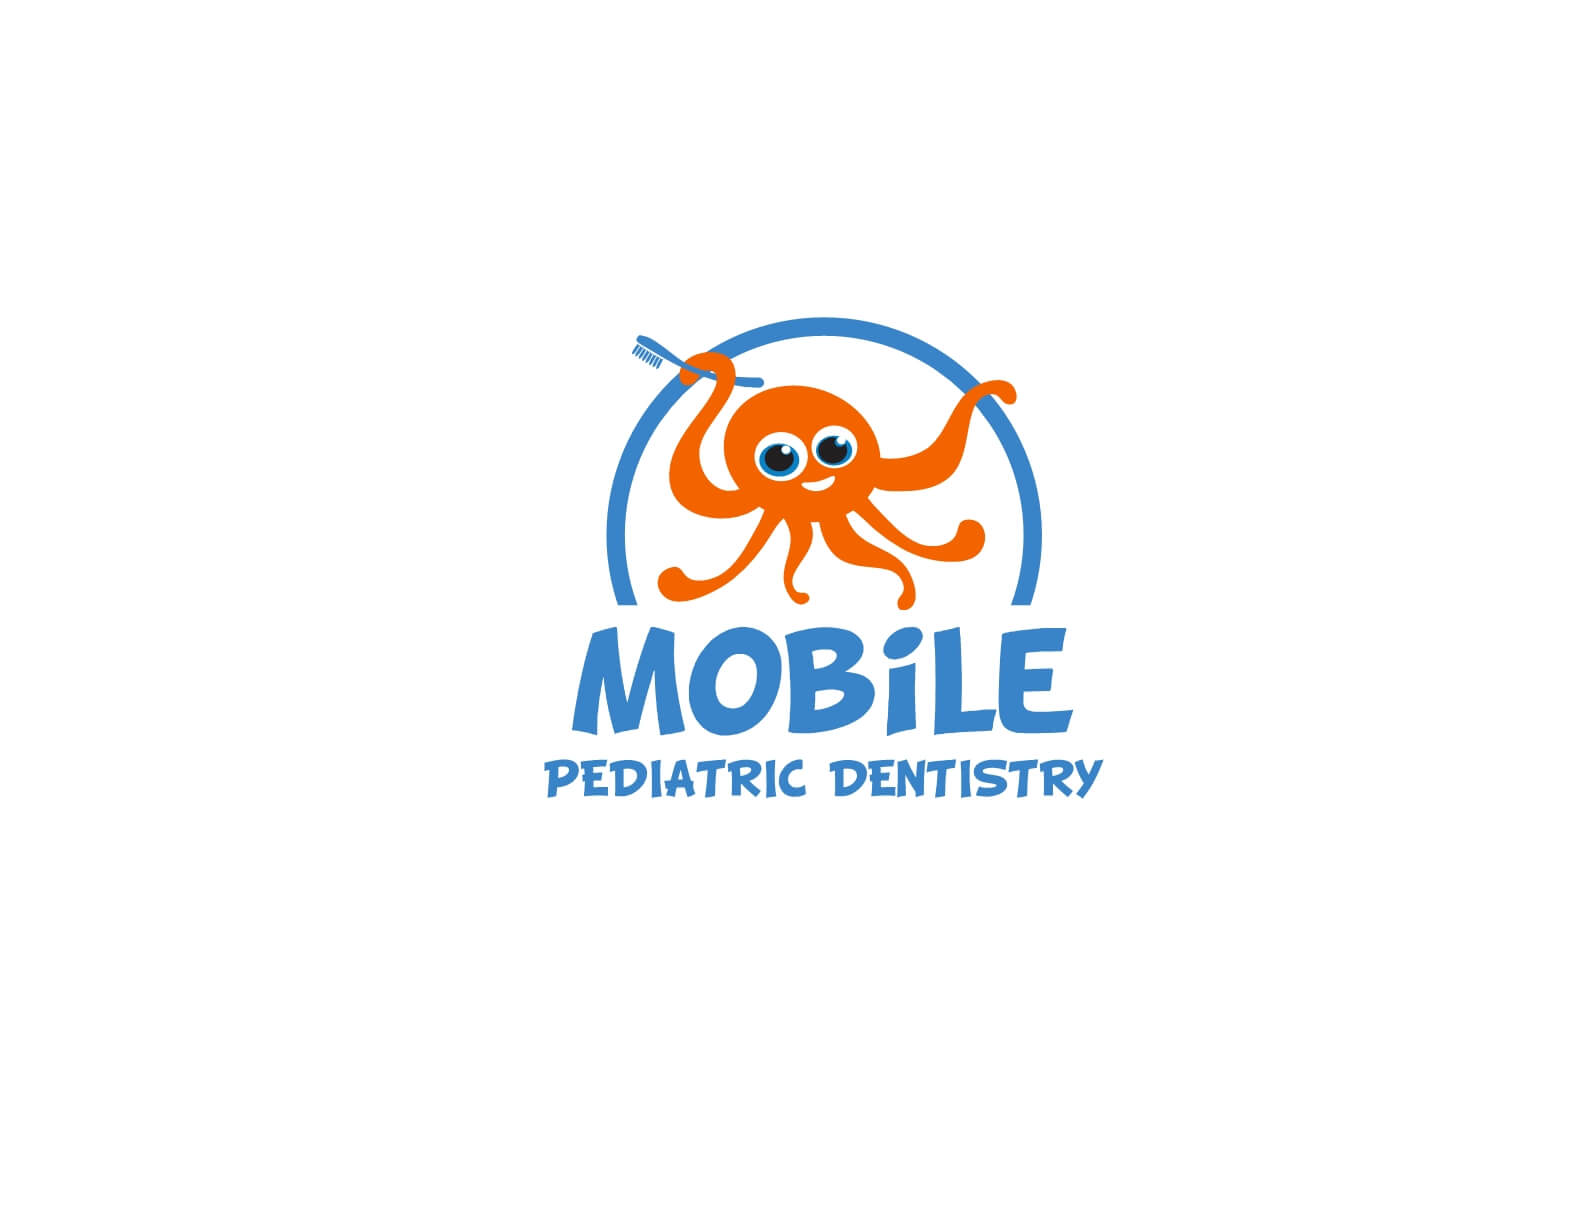 Mobile Pediatric Dentistry, Inc